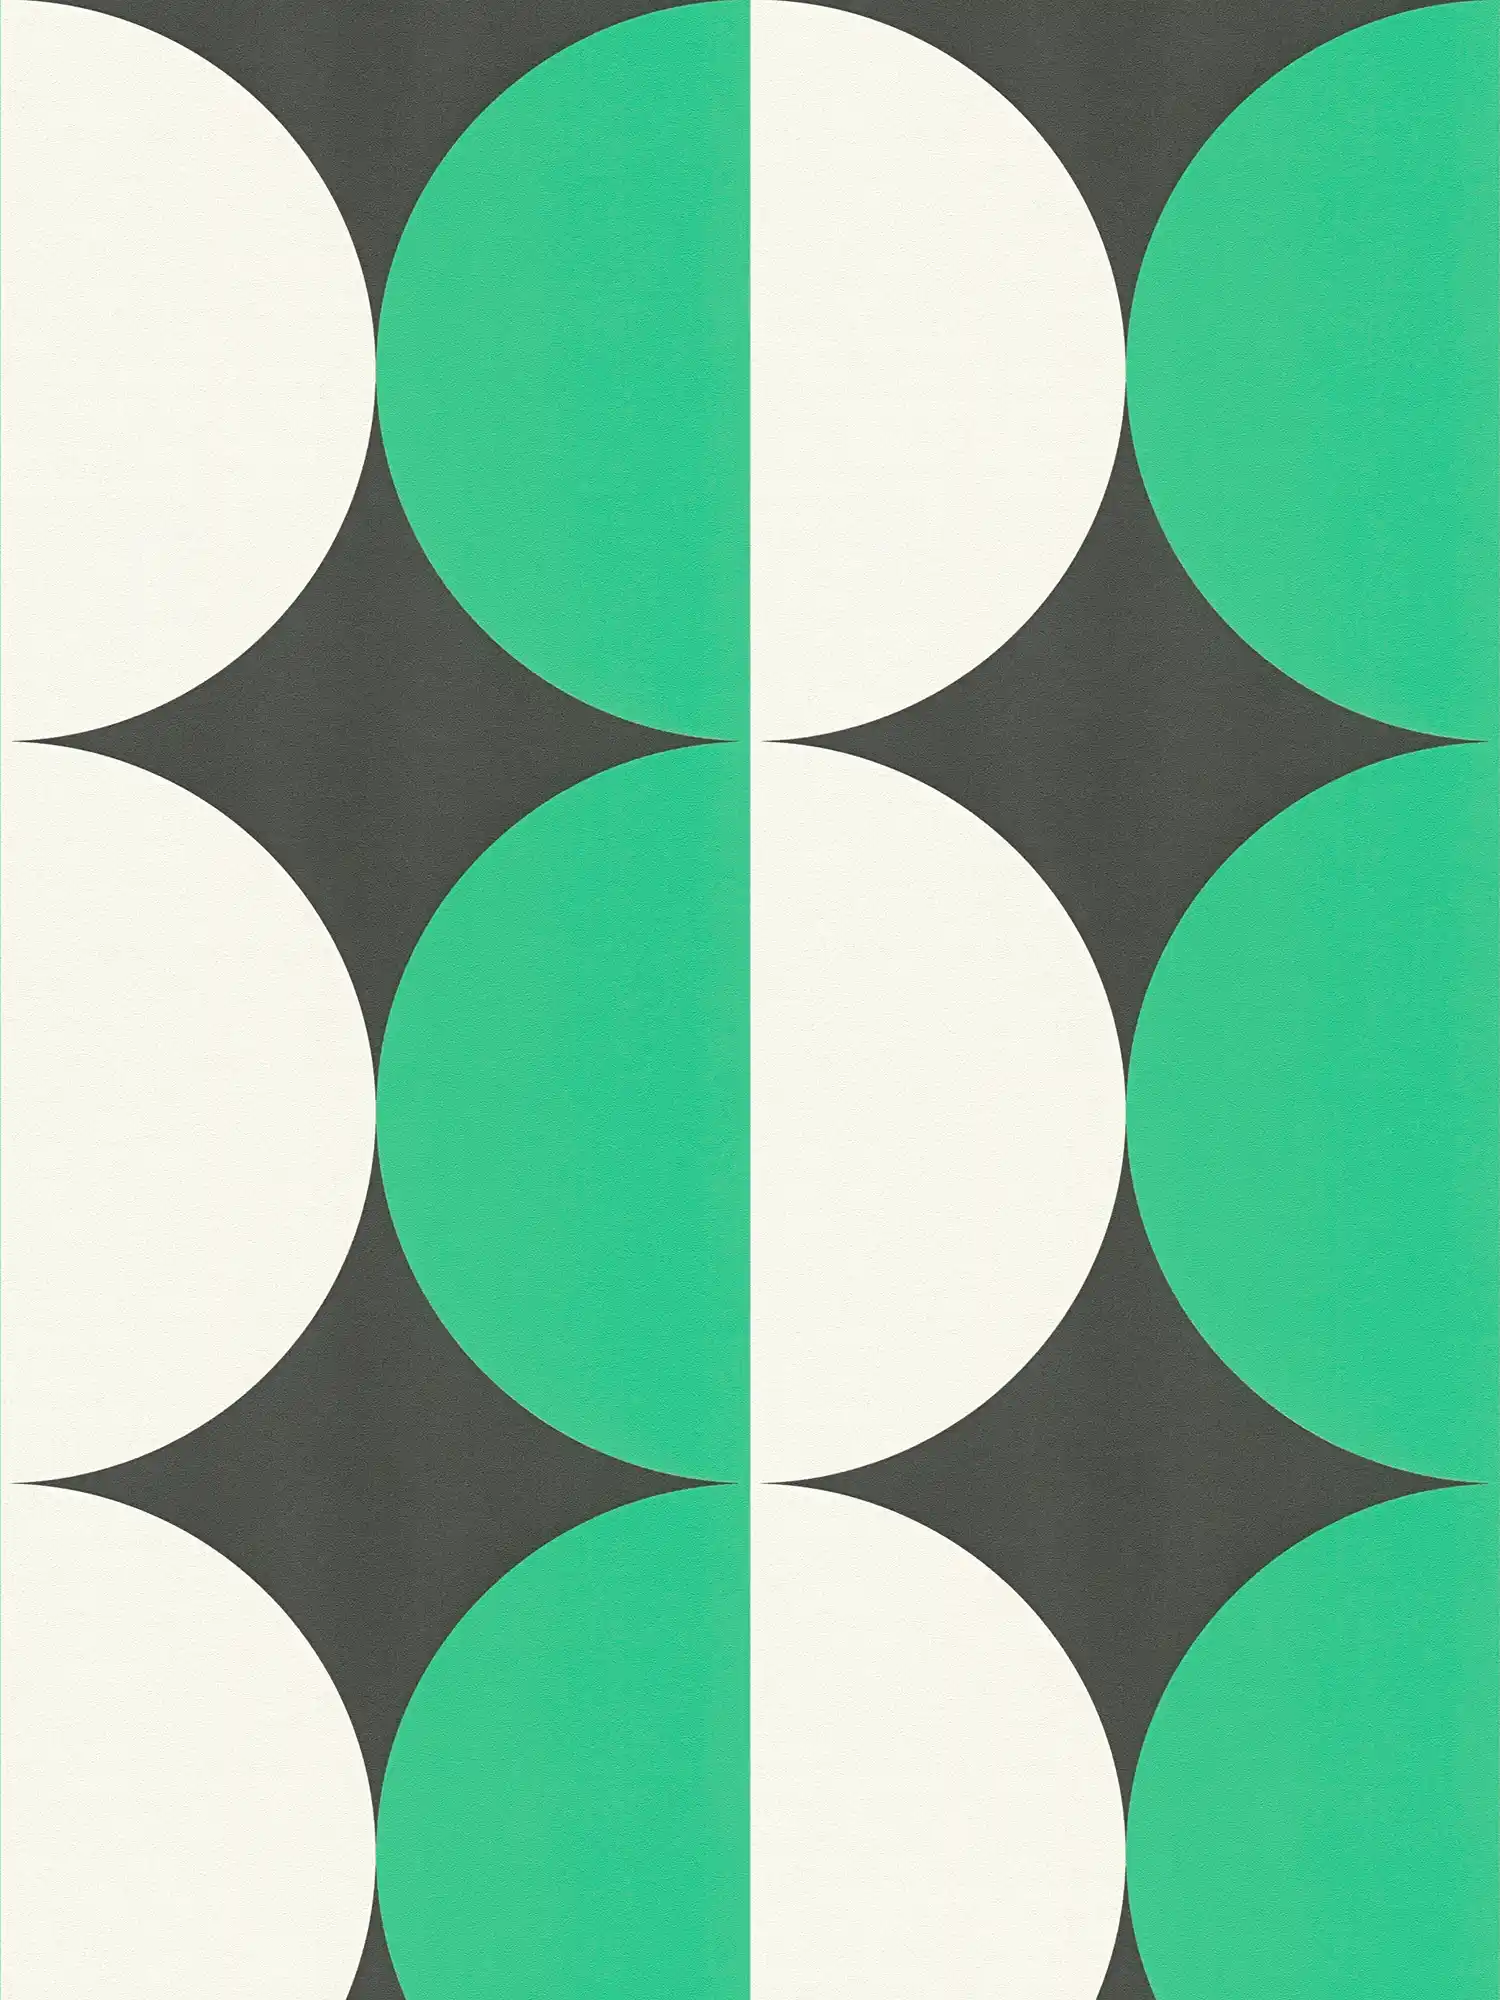         Kreismuster Vliestapete im Retro 70er Jahre Stil – Grün, Weiß, Schwarz
    